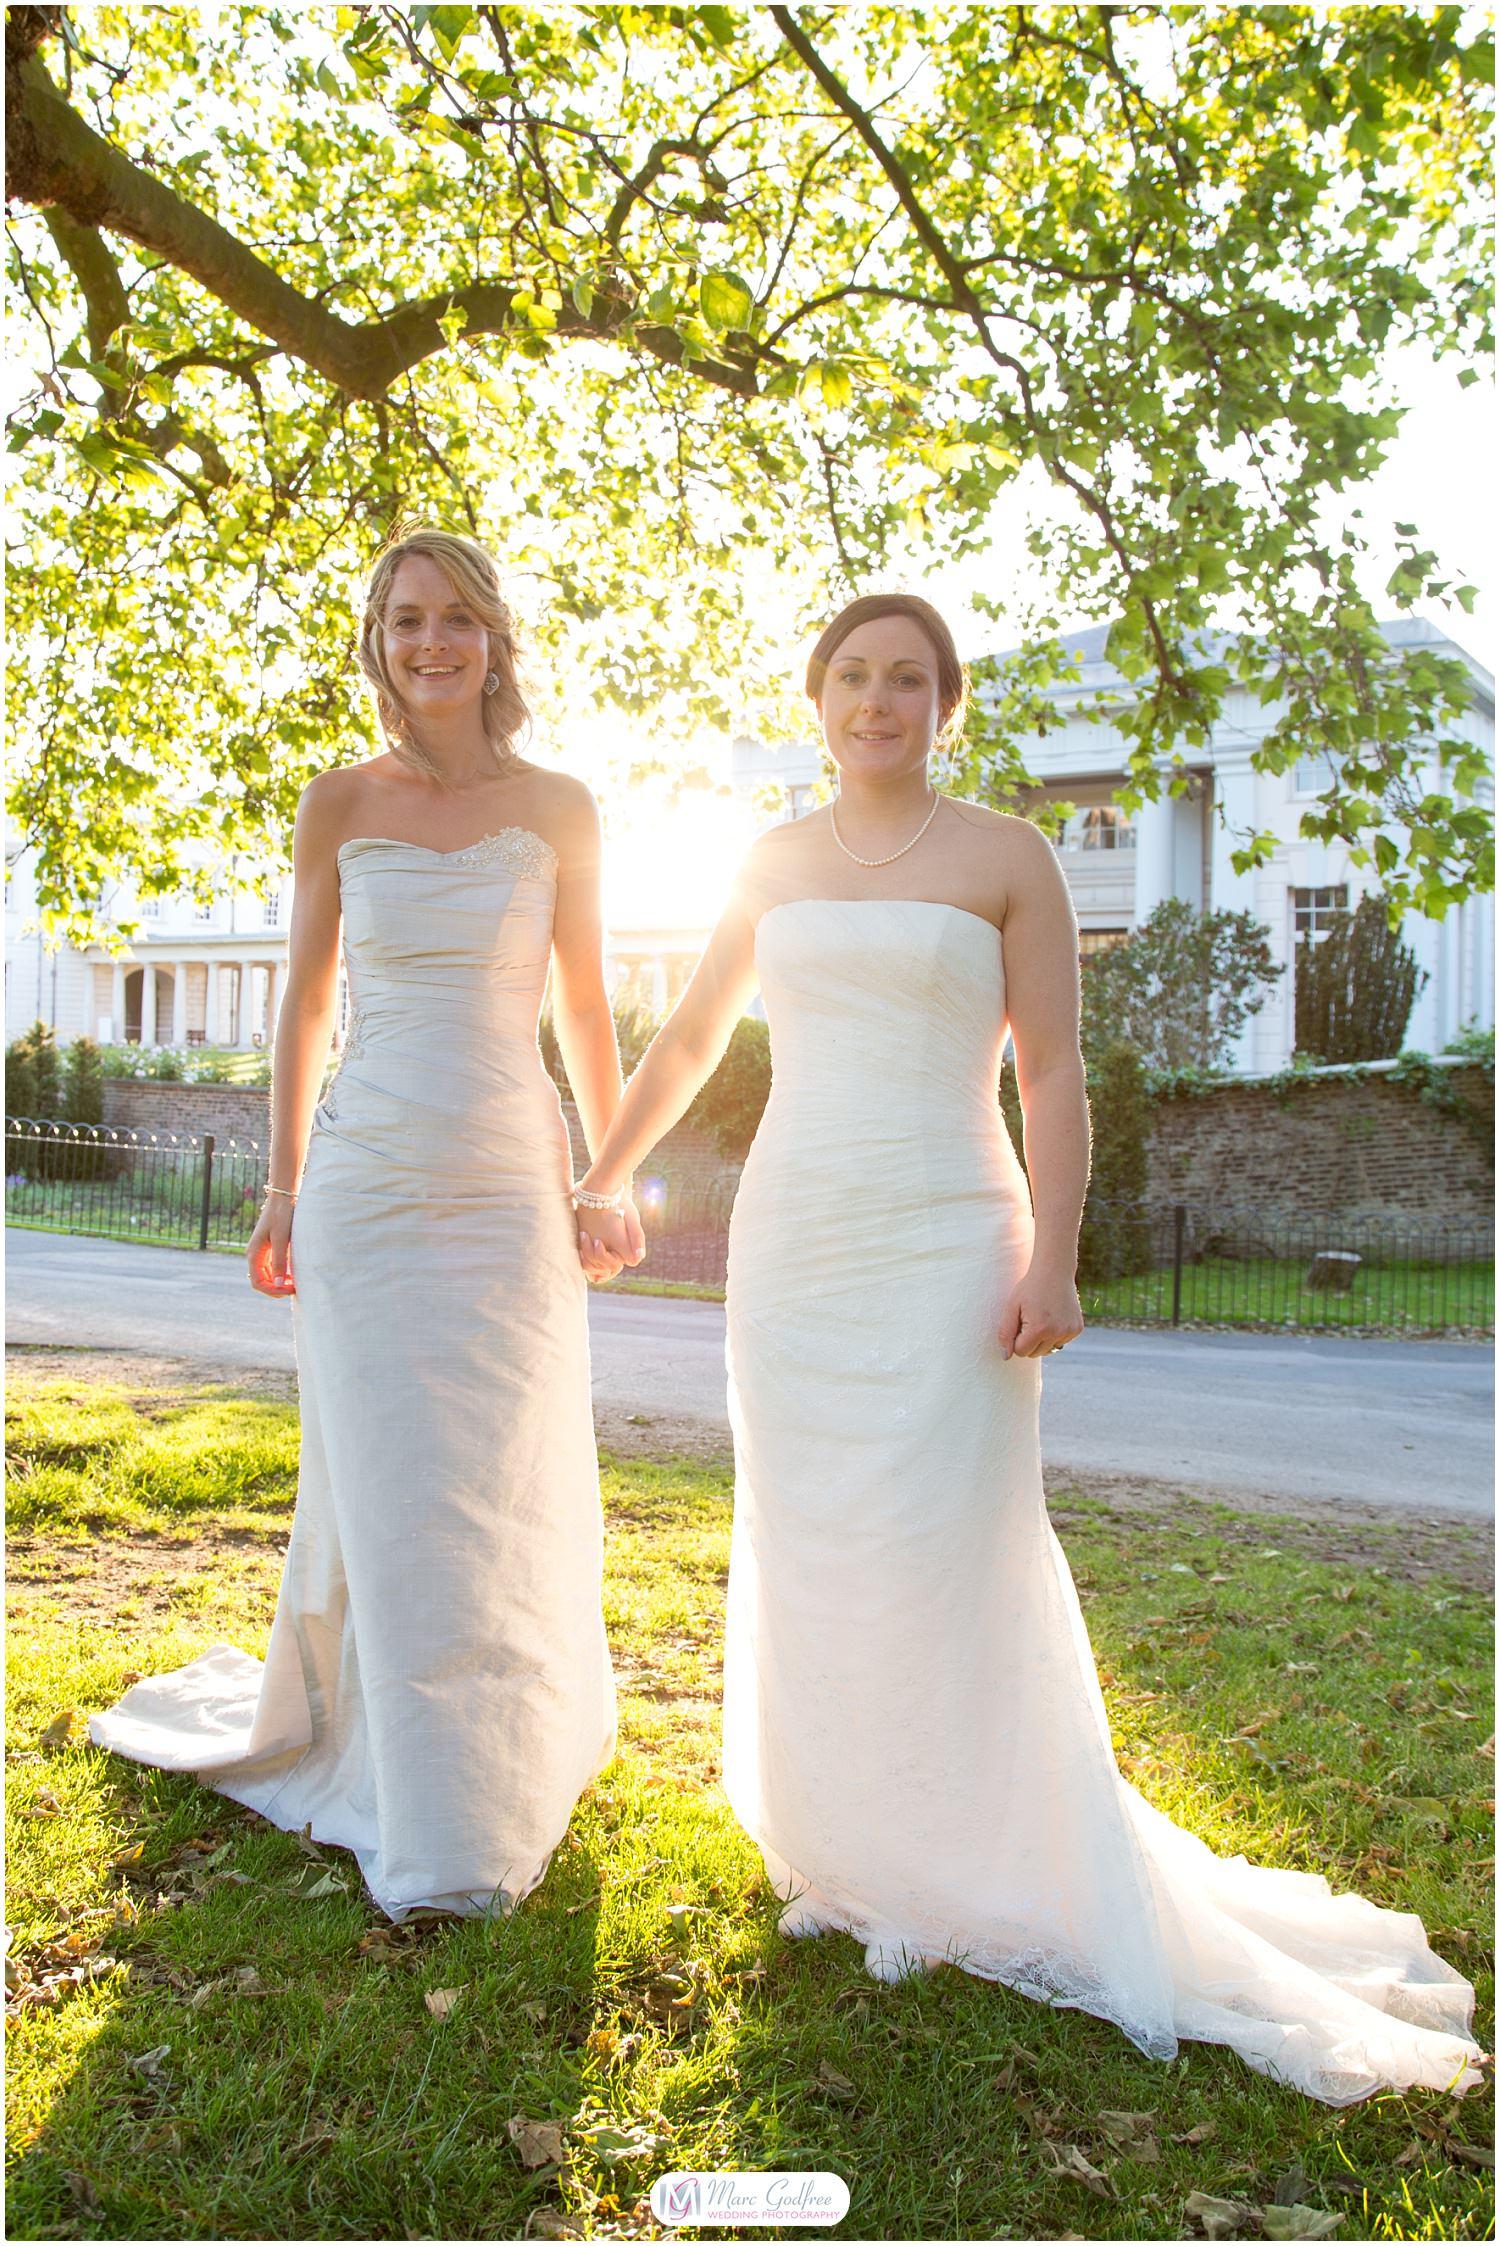 Wedding Dress Shapes - Stylish Sheath